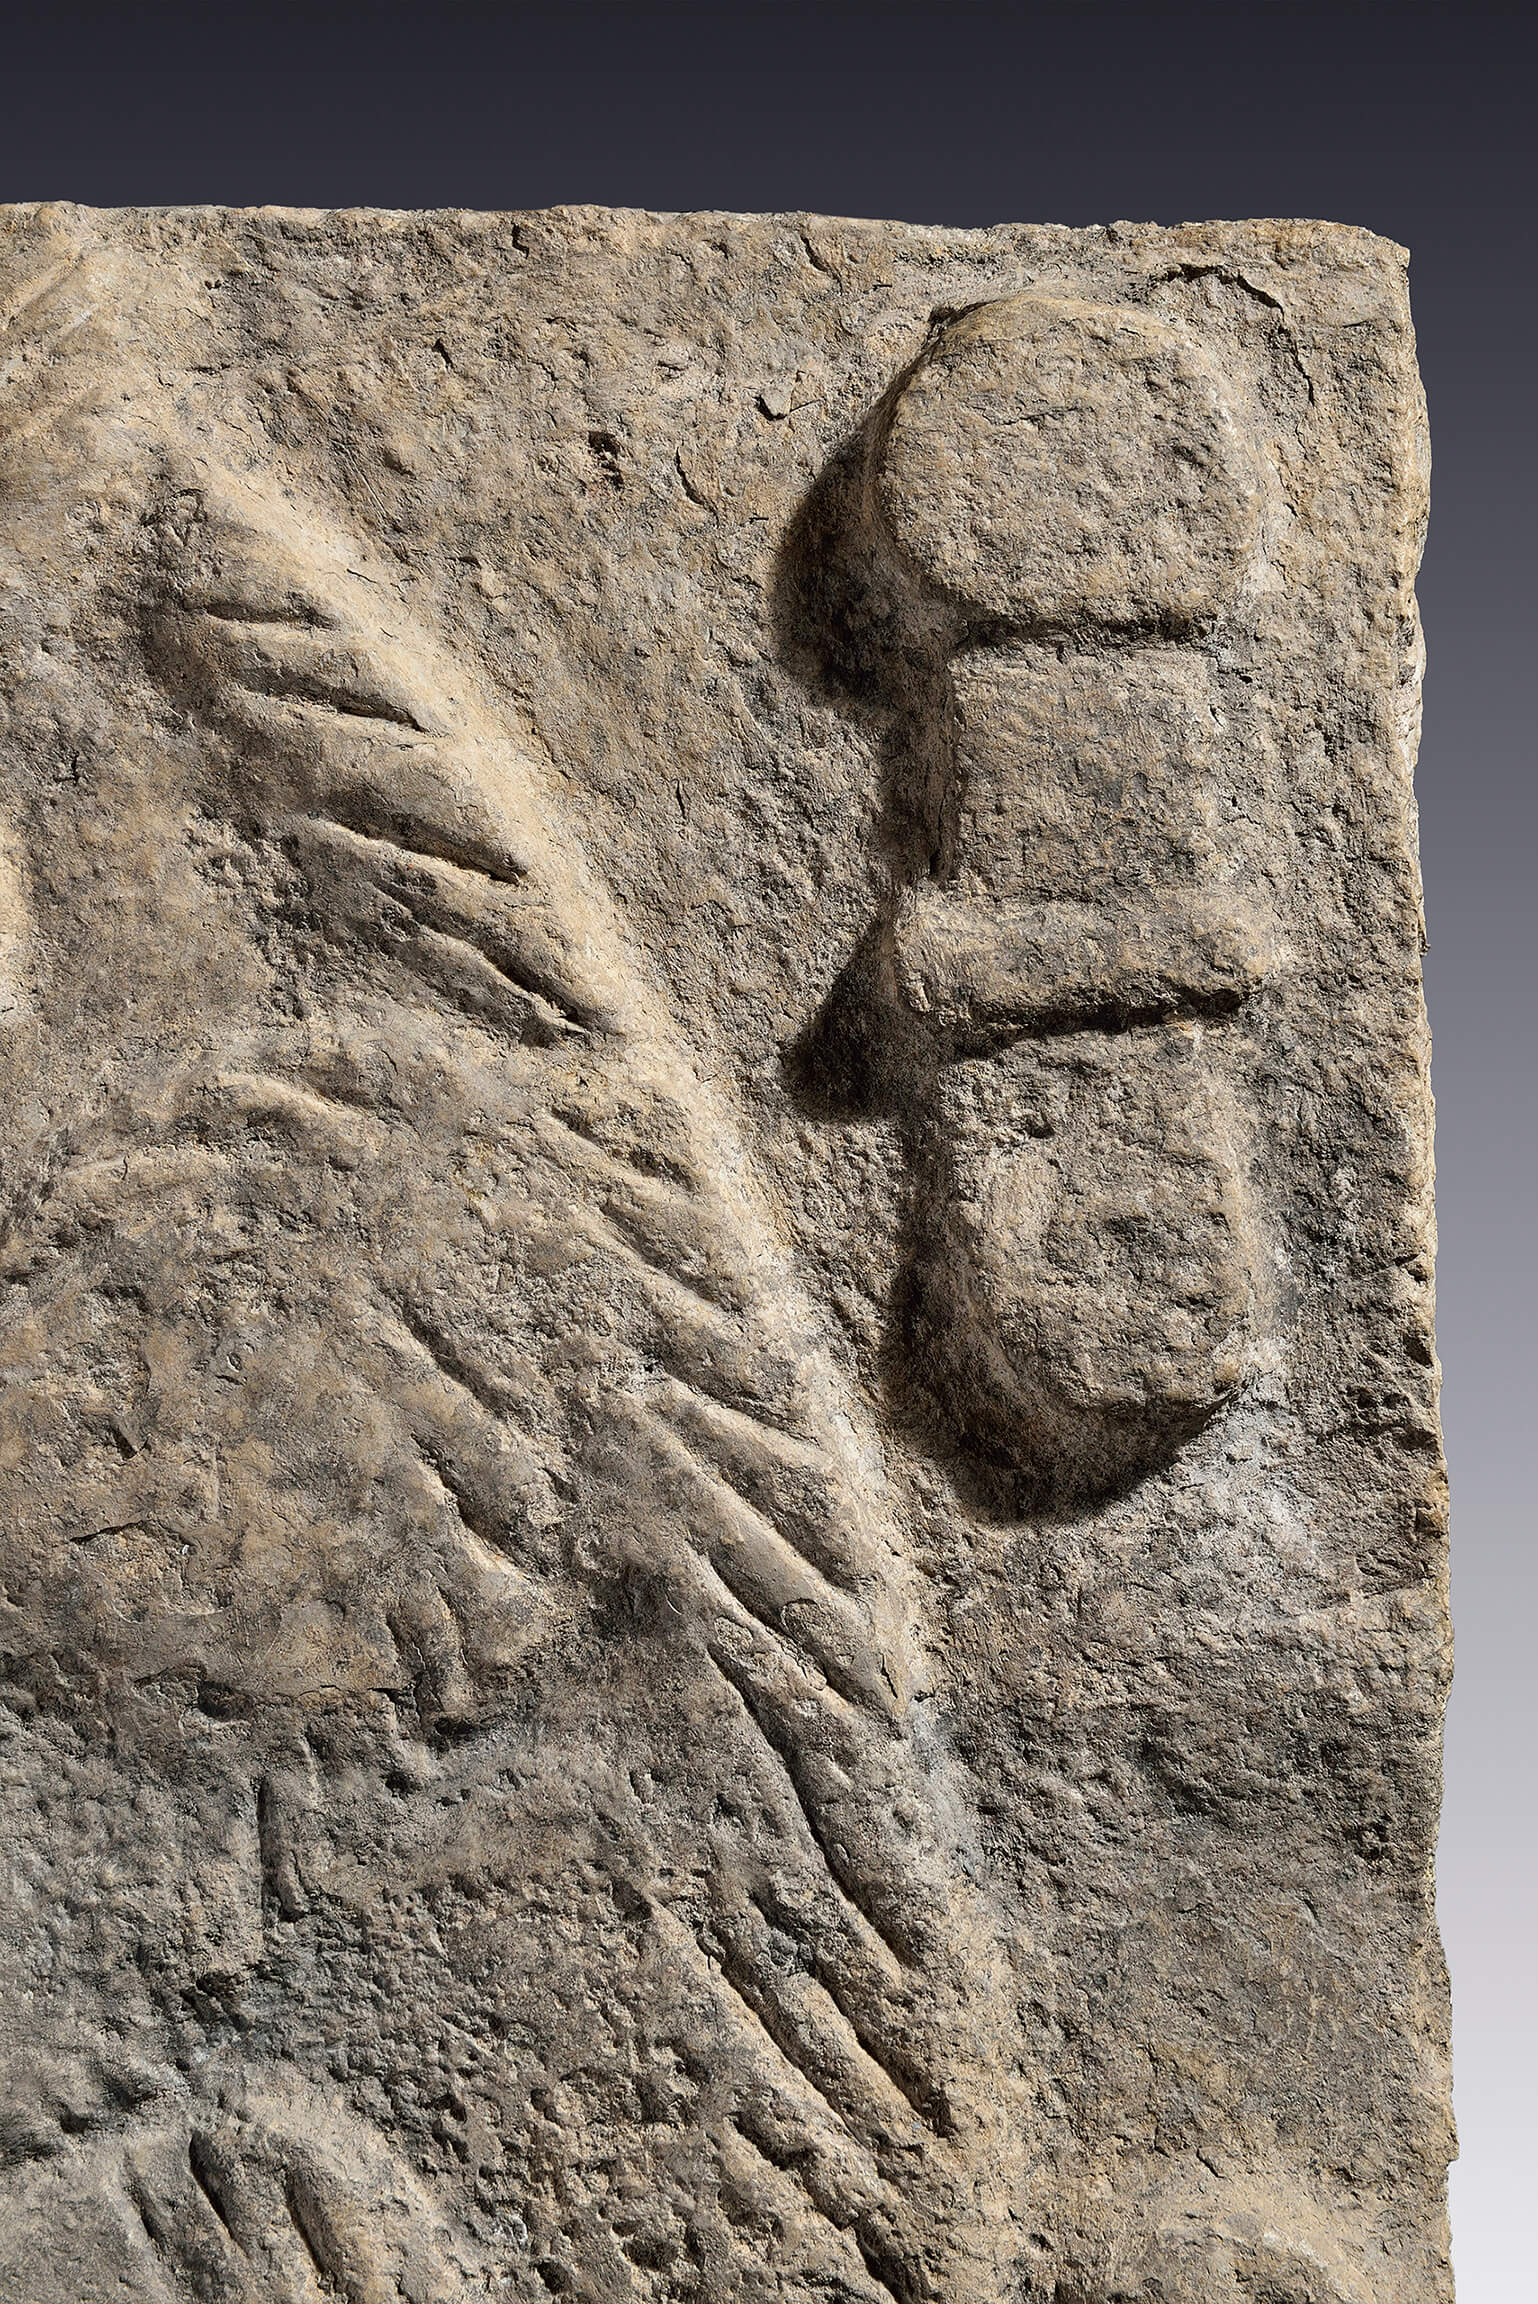 Estela con roedor erguido | El México antiguo. Salas de Arte Prehispánico | Museo Amparo, Puebla